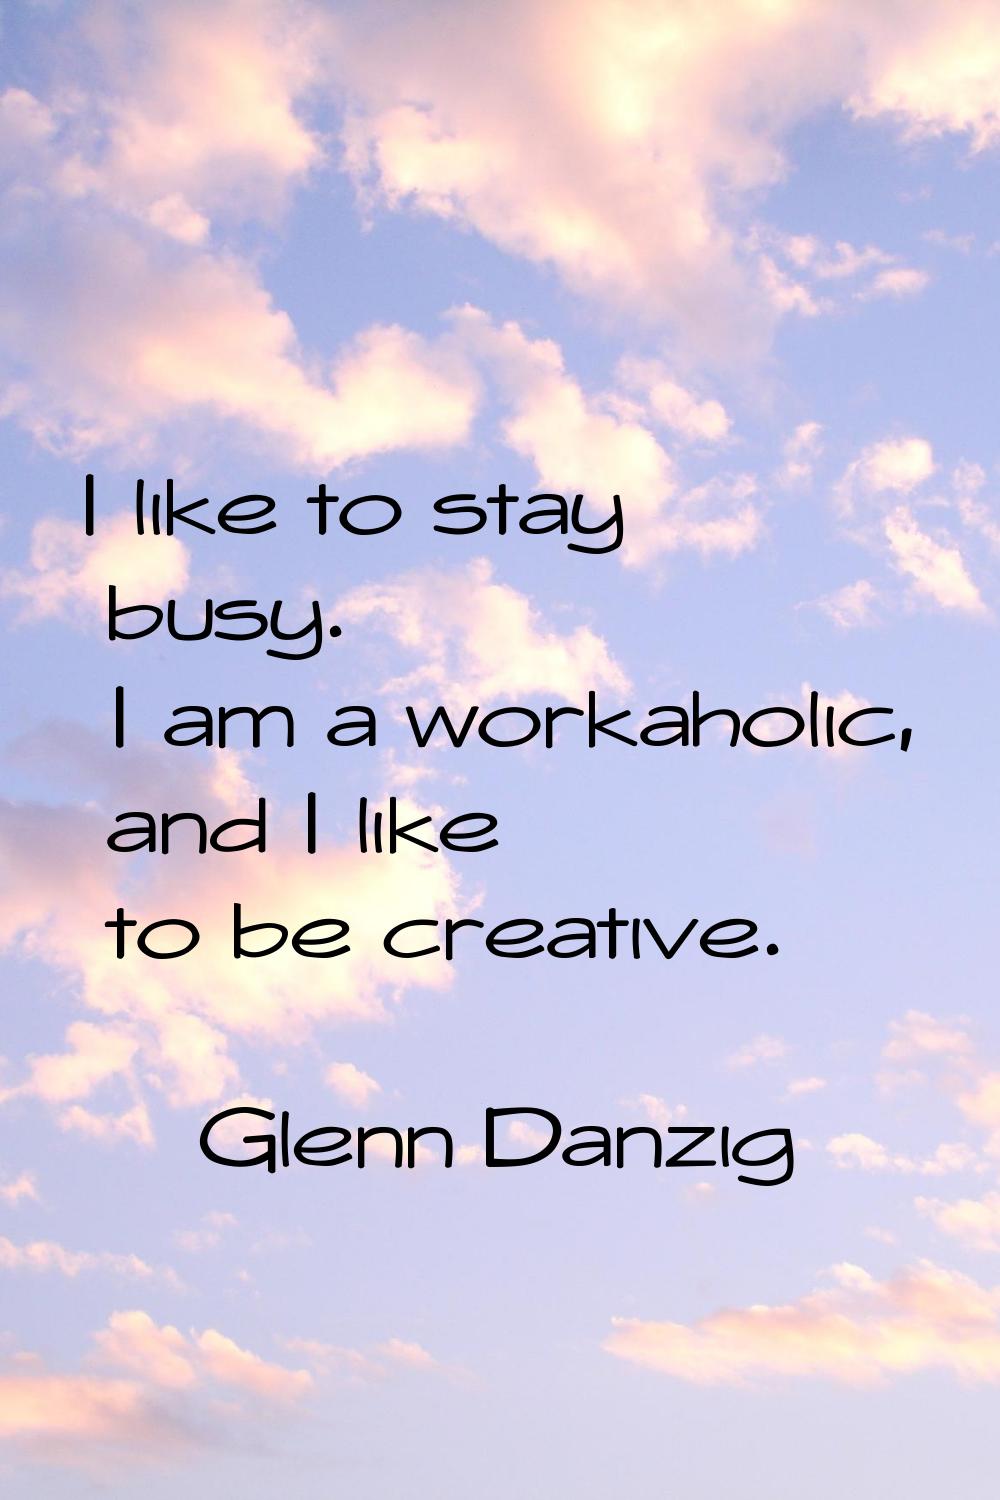 I like to stay busy. I am a workaholic, and I like to be creative.